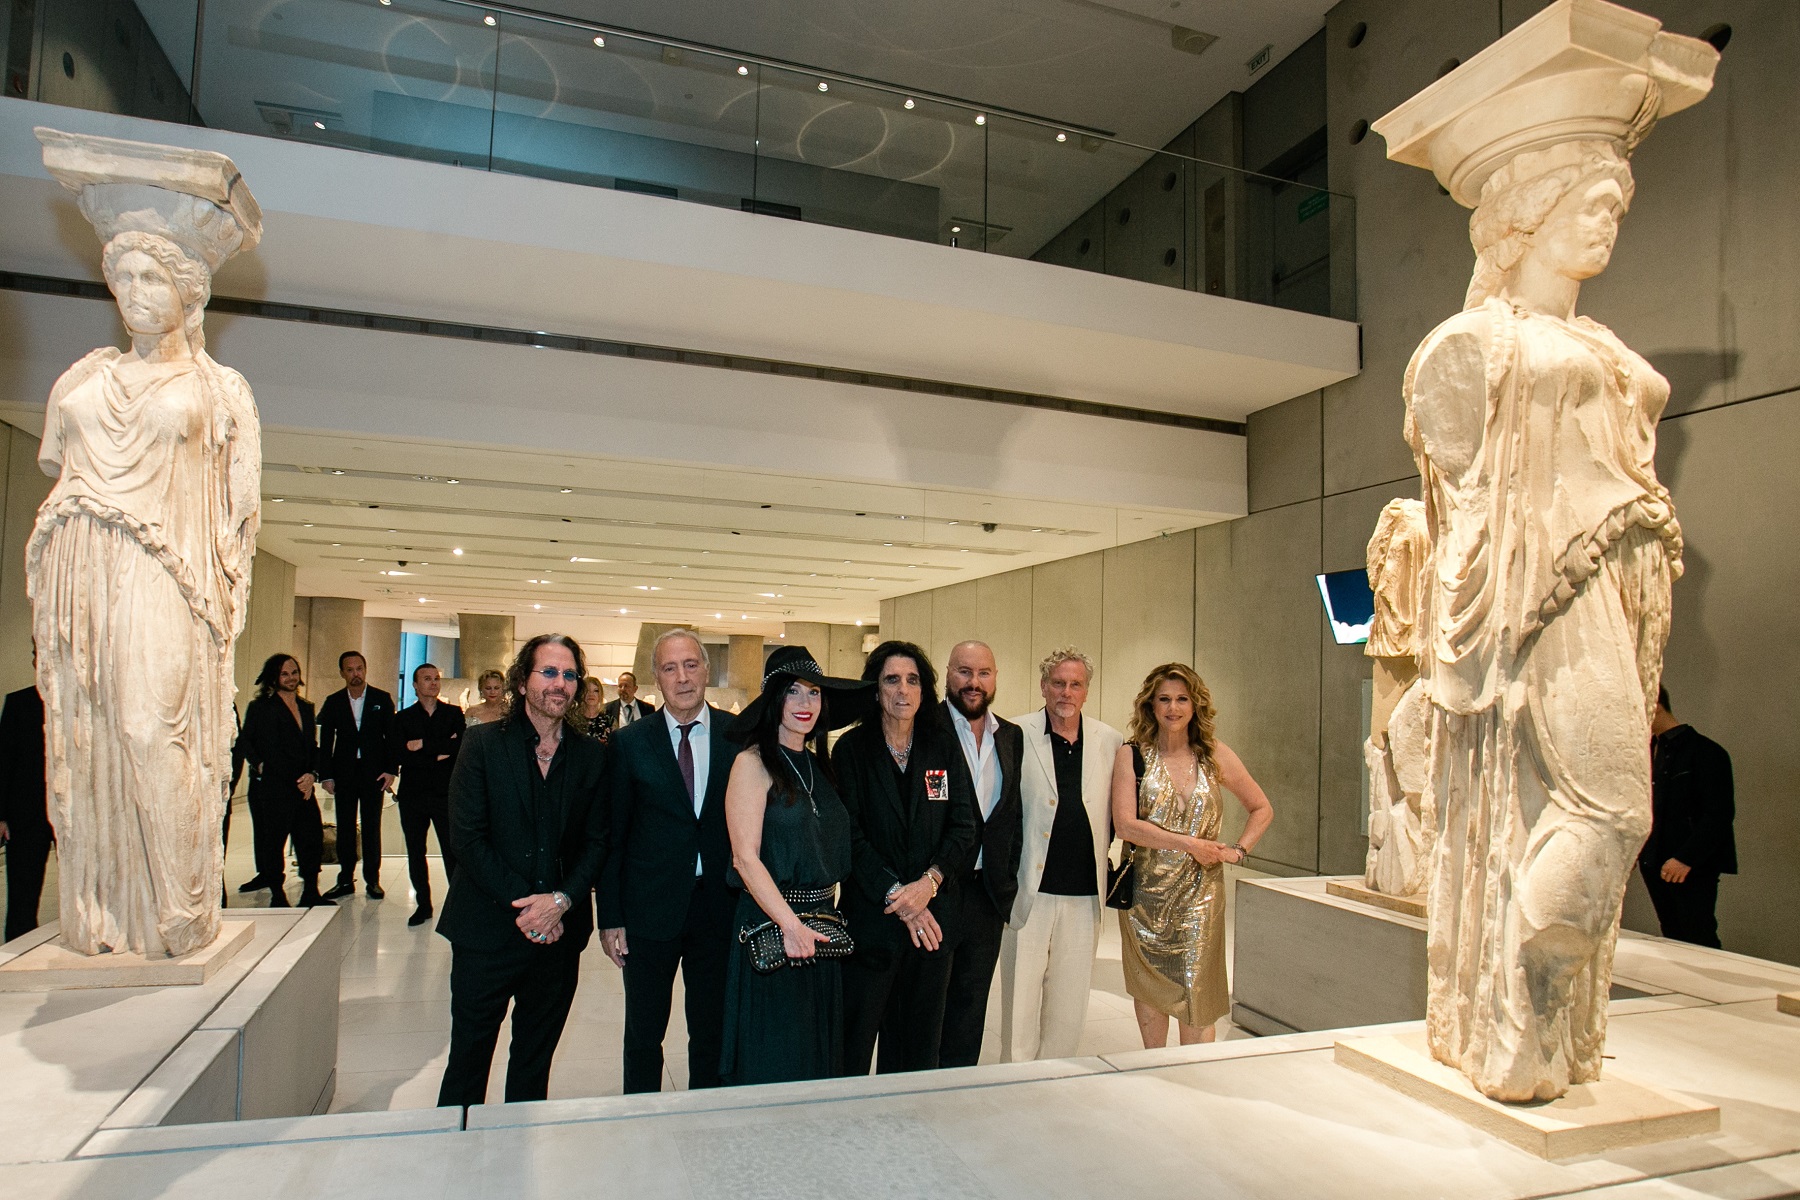 Μουσείο Ακρόπολης: Ξενάγηση του Desmond Child και άλλων κορυφαίων καλλιτεχνών πριν τη μεγάλη συναυλία στο Ηρώδειο